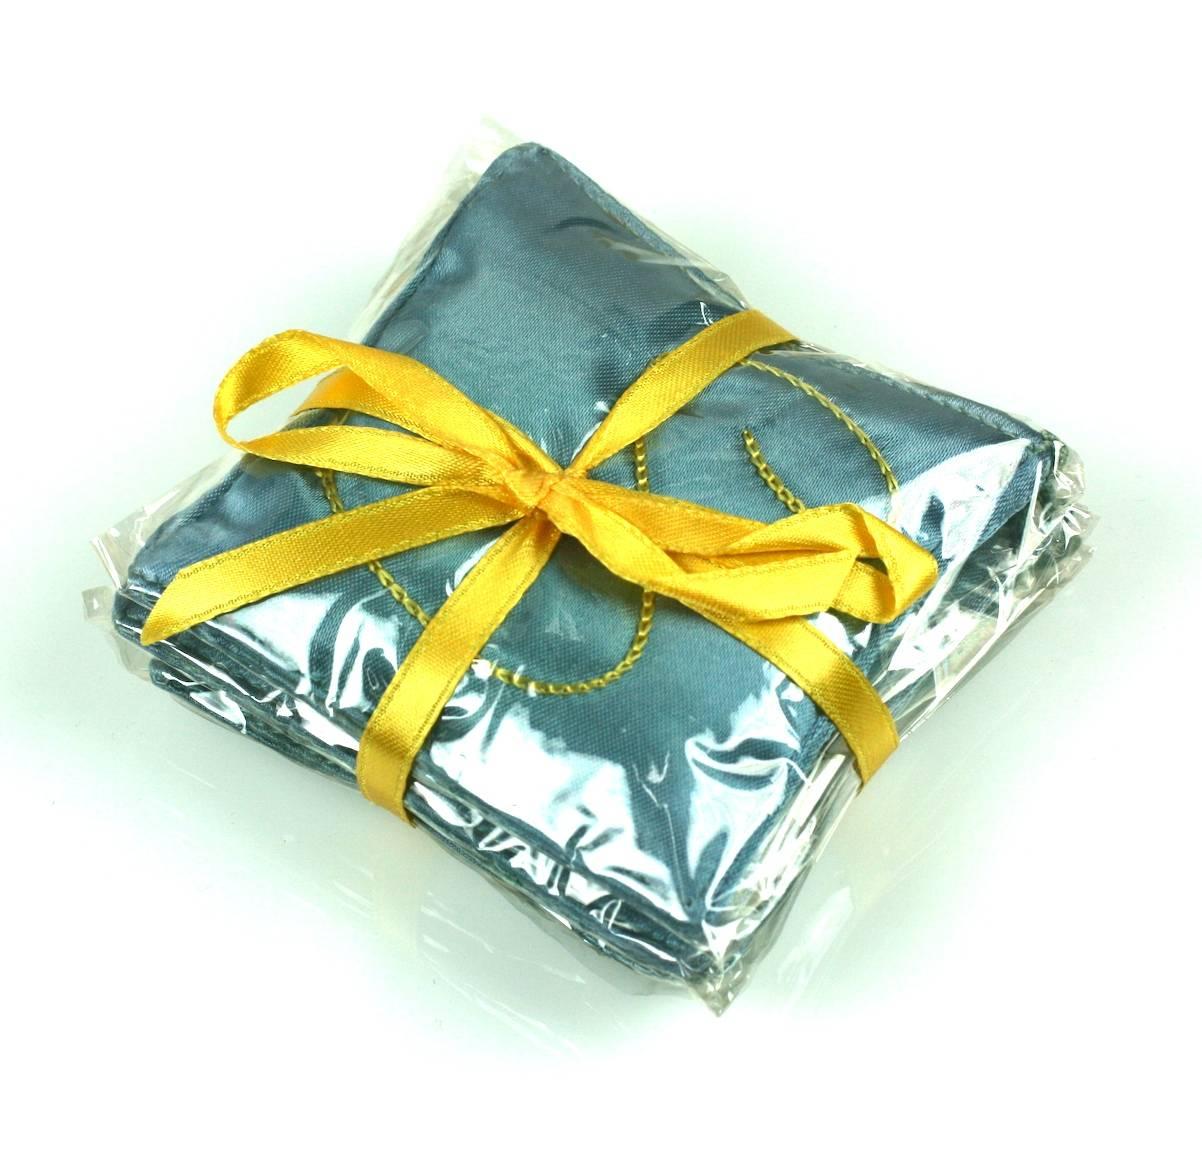 Schiaparelli's Mint in Box, Sleeping perfume sachets.of Sleeping blauem Seidensatin, handgestickt mit Schiaparelli's Unterschrift S. Noch duftend verpackt in der originalen ungeöffneten Celophan, gebunden mit leuchtend gelben Band.
Ausgezeichneter